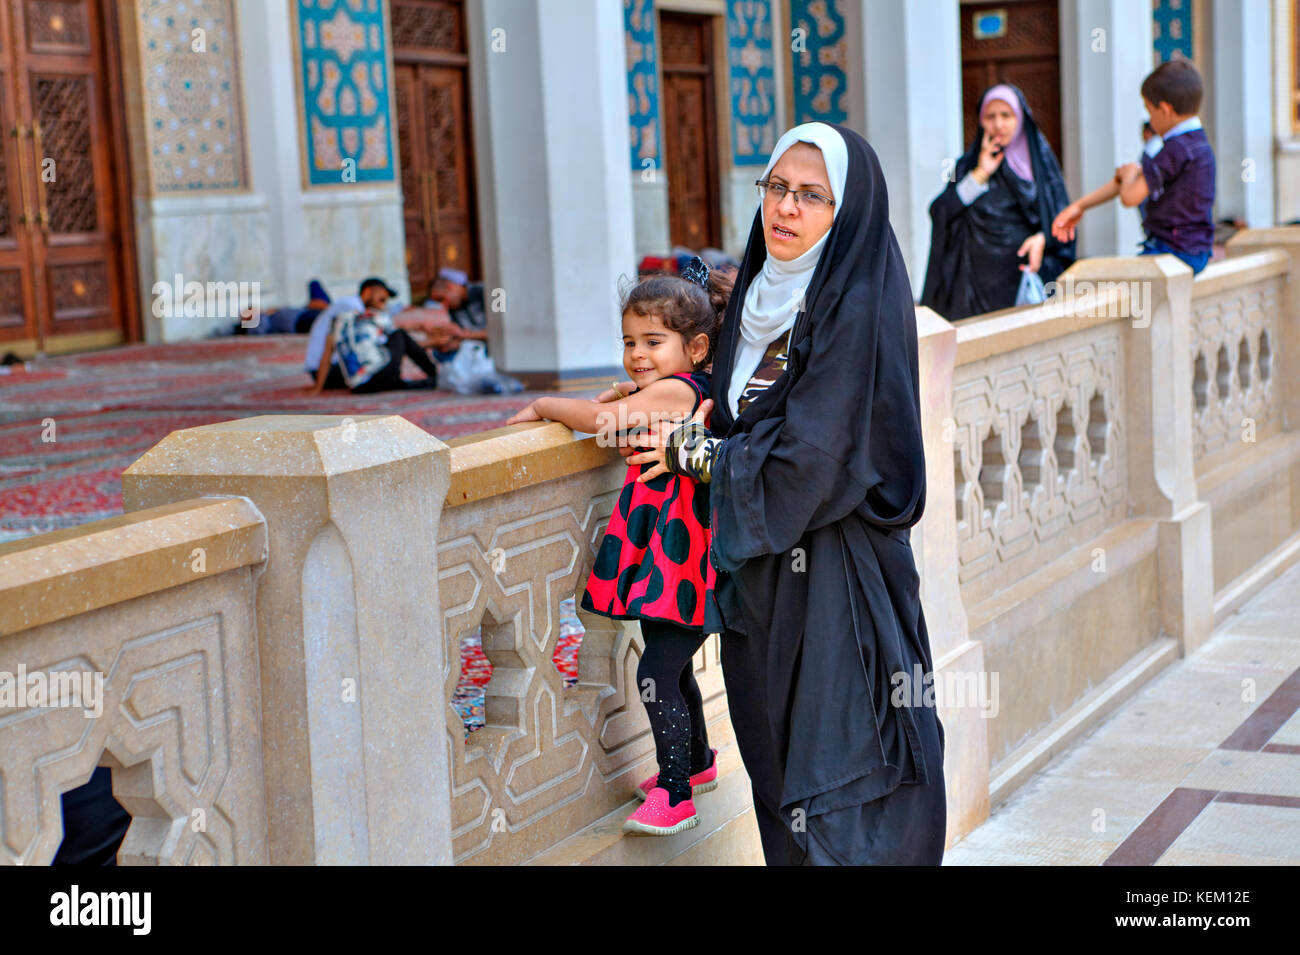 La province du Fars, Shiraz, Iran - 19 avril, 2017 : shah Cheragh Shrine, femme musulmane portant un voile islamique promenades dans la cour intérieure de la mosquée w Banque D'Images